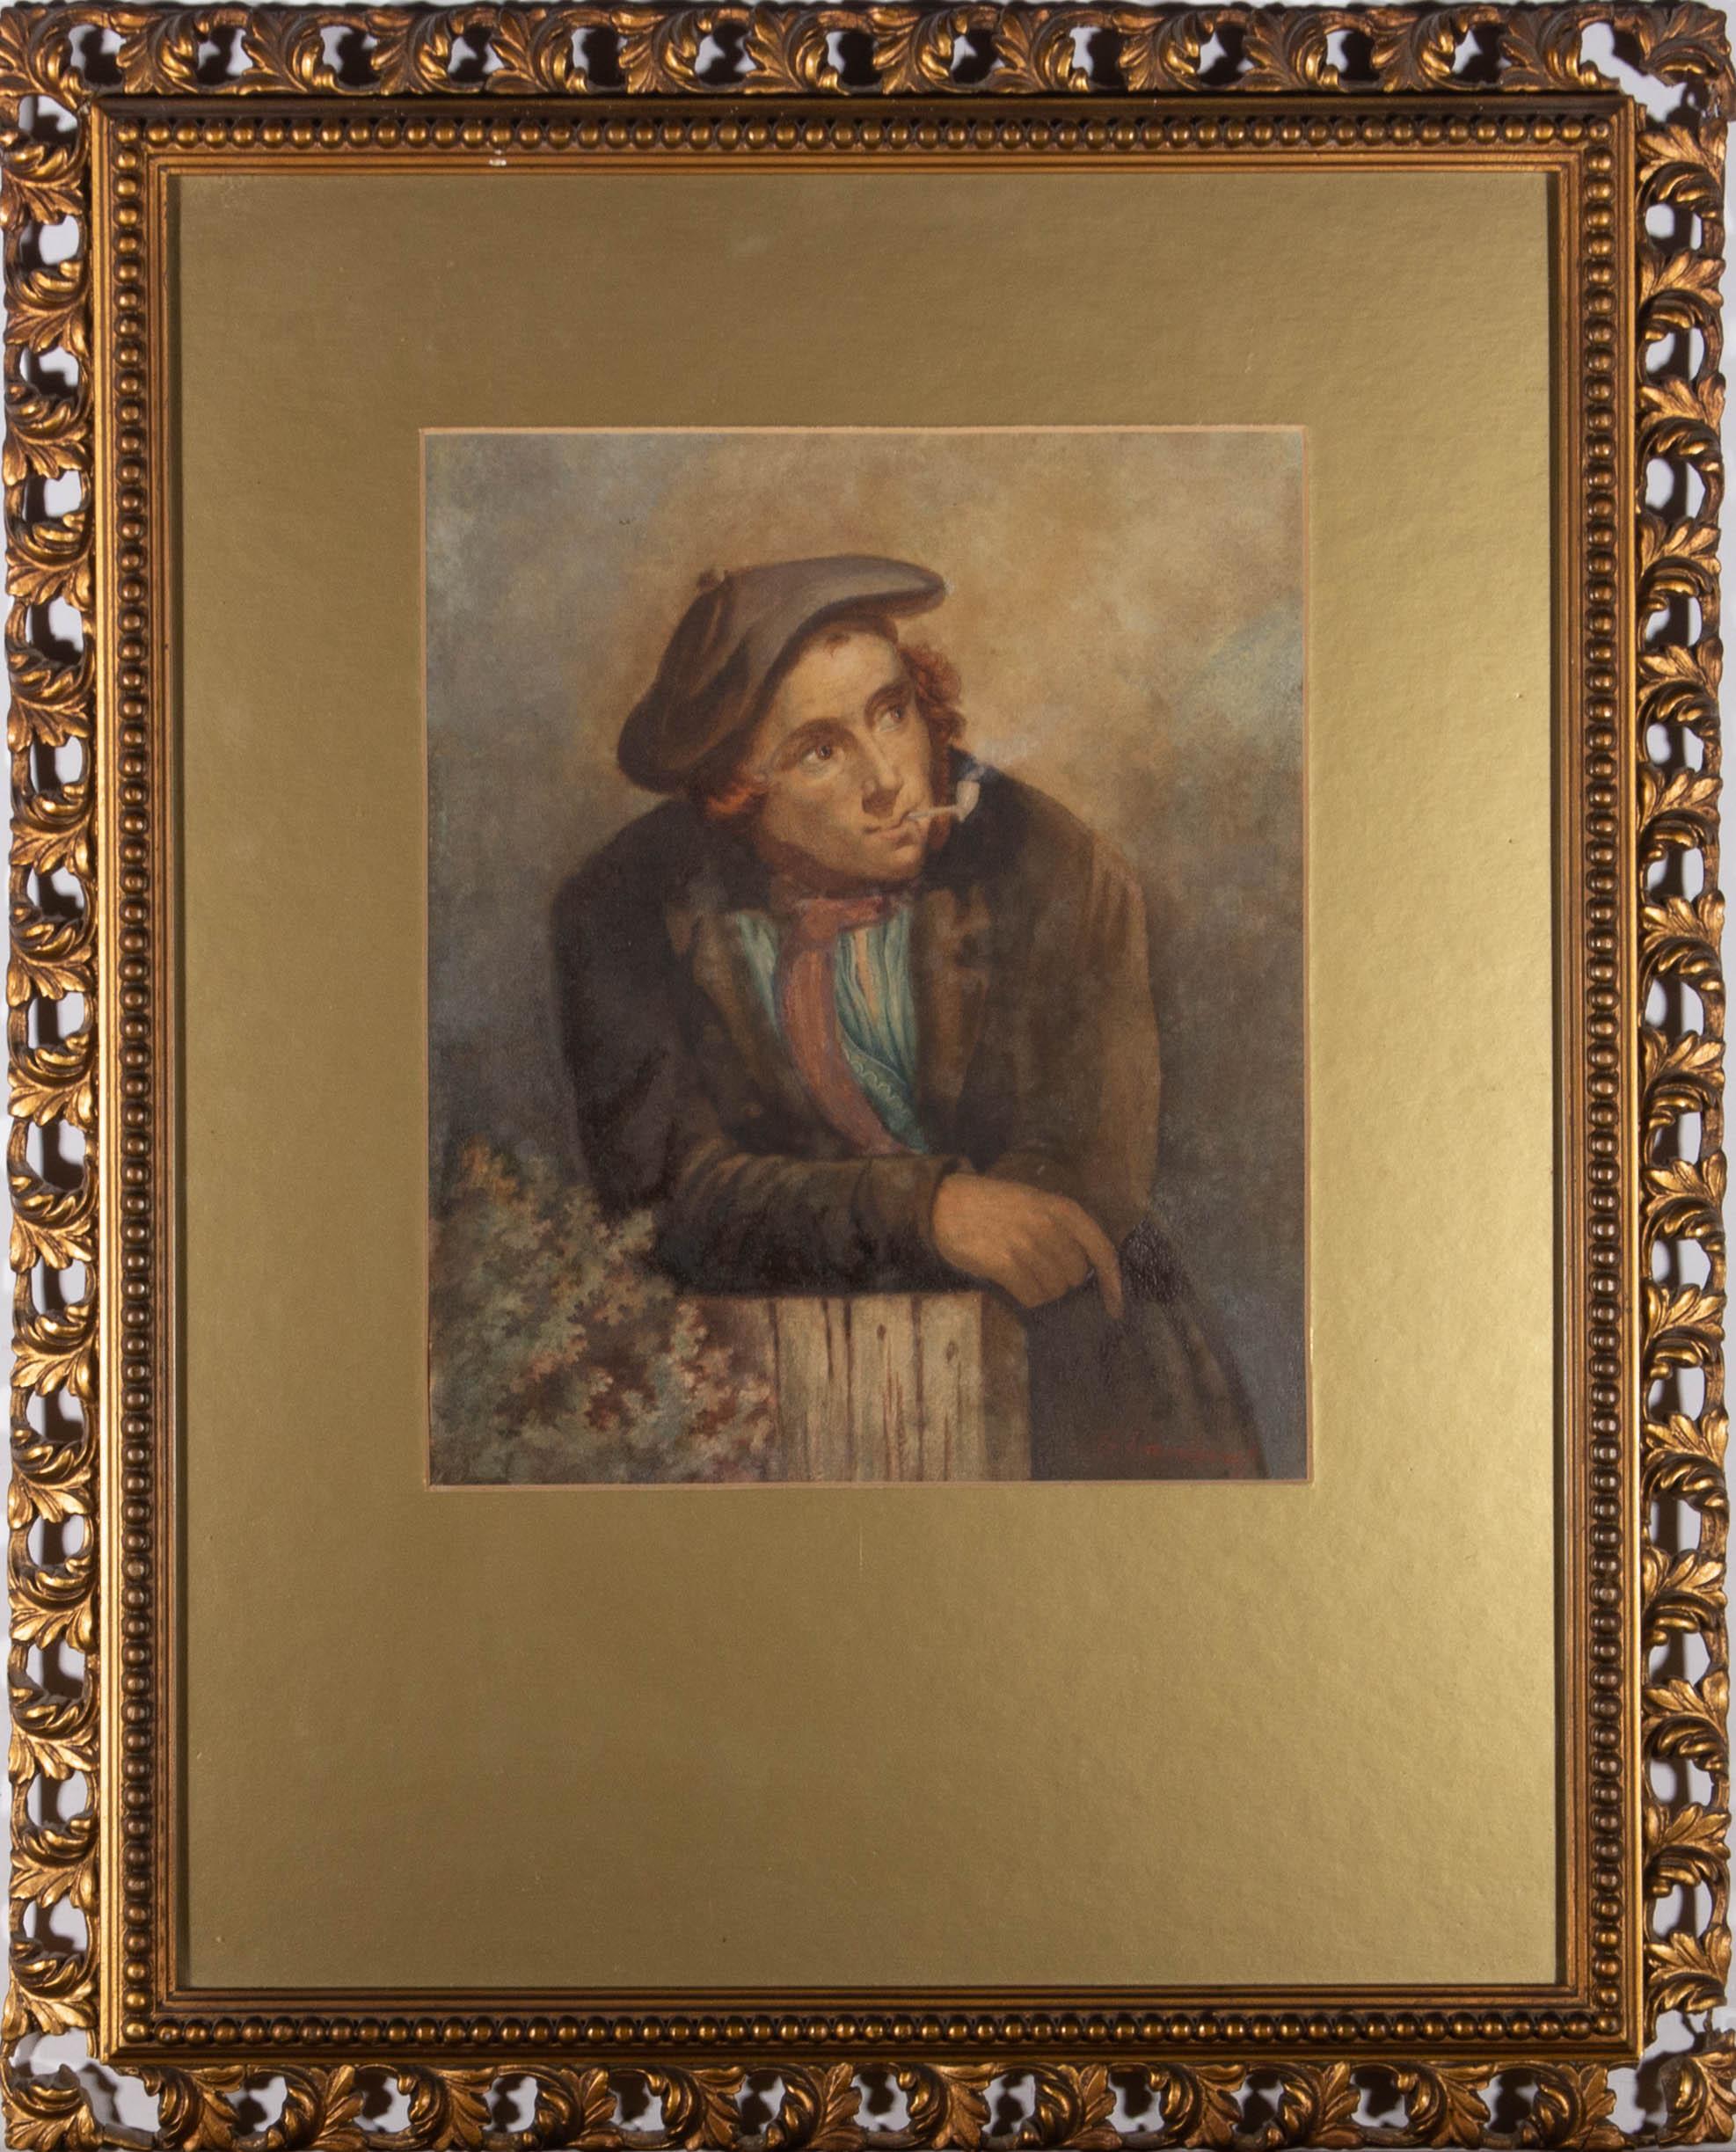 Das Porträt eines schottischen Mannes, der einen Tam o' Shanter trägt und sich an einen Pfosten lehnt, während er seine Pfeife raucht. Präsentiert in einem verglasten Goldkarton und einem verzierten Holzrahmen in Goldoptik mit durchbrochenen